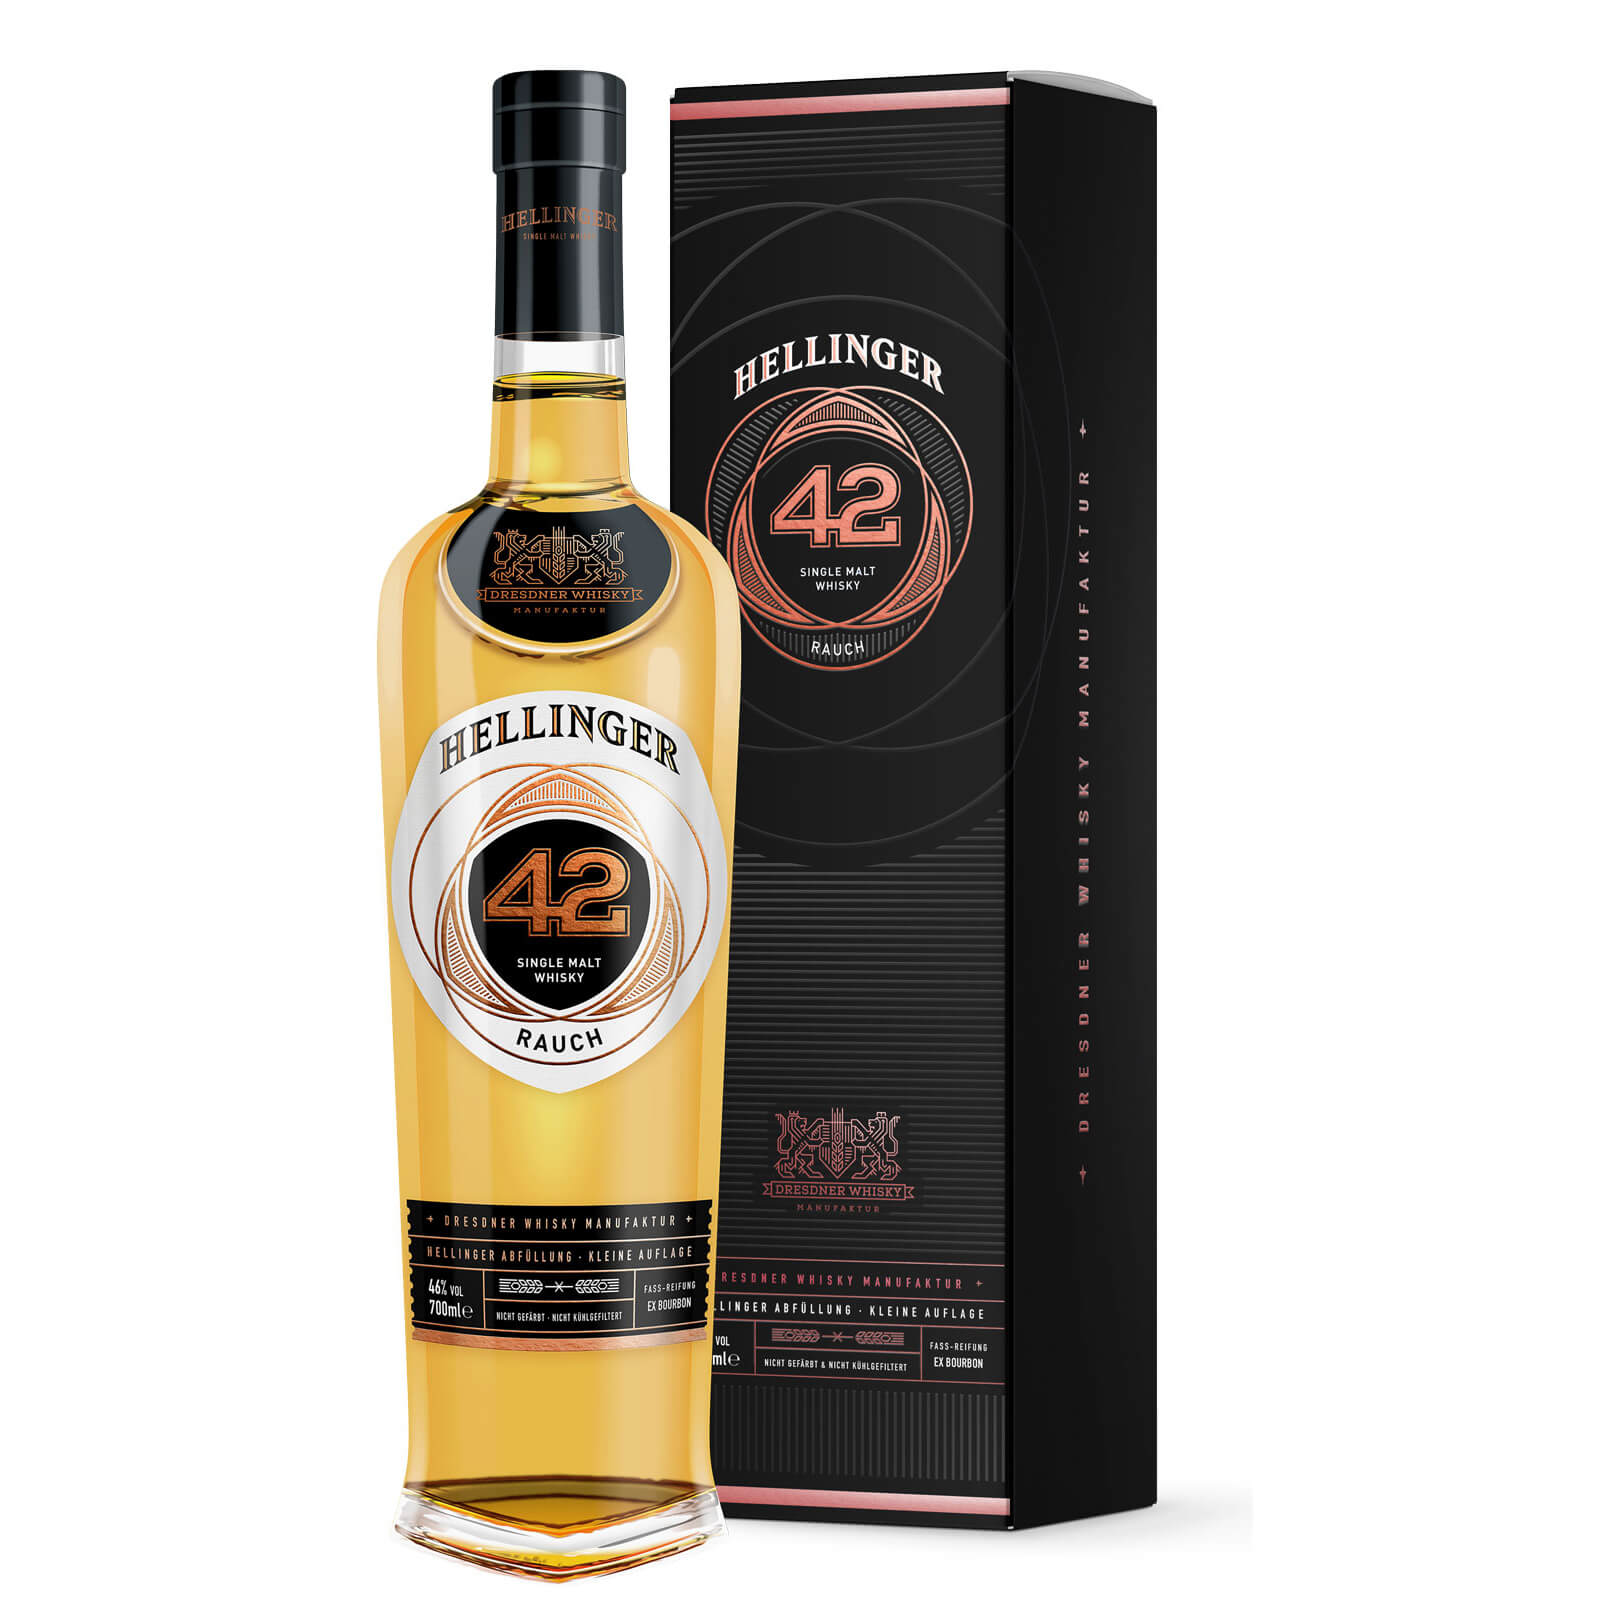 dresdner-whisky-manufaktur-bottle-hellinger-42-rauch